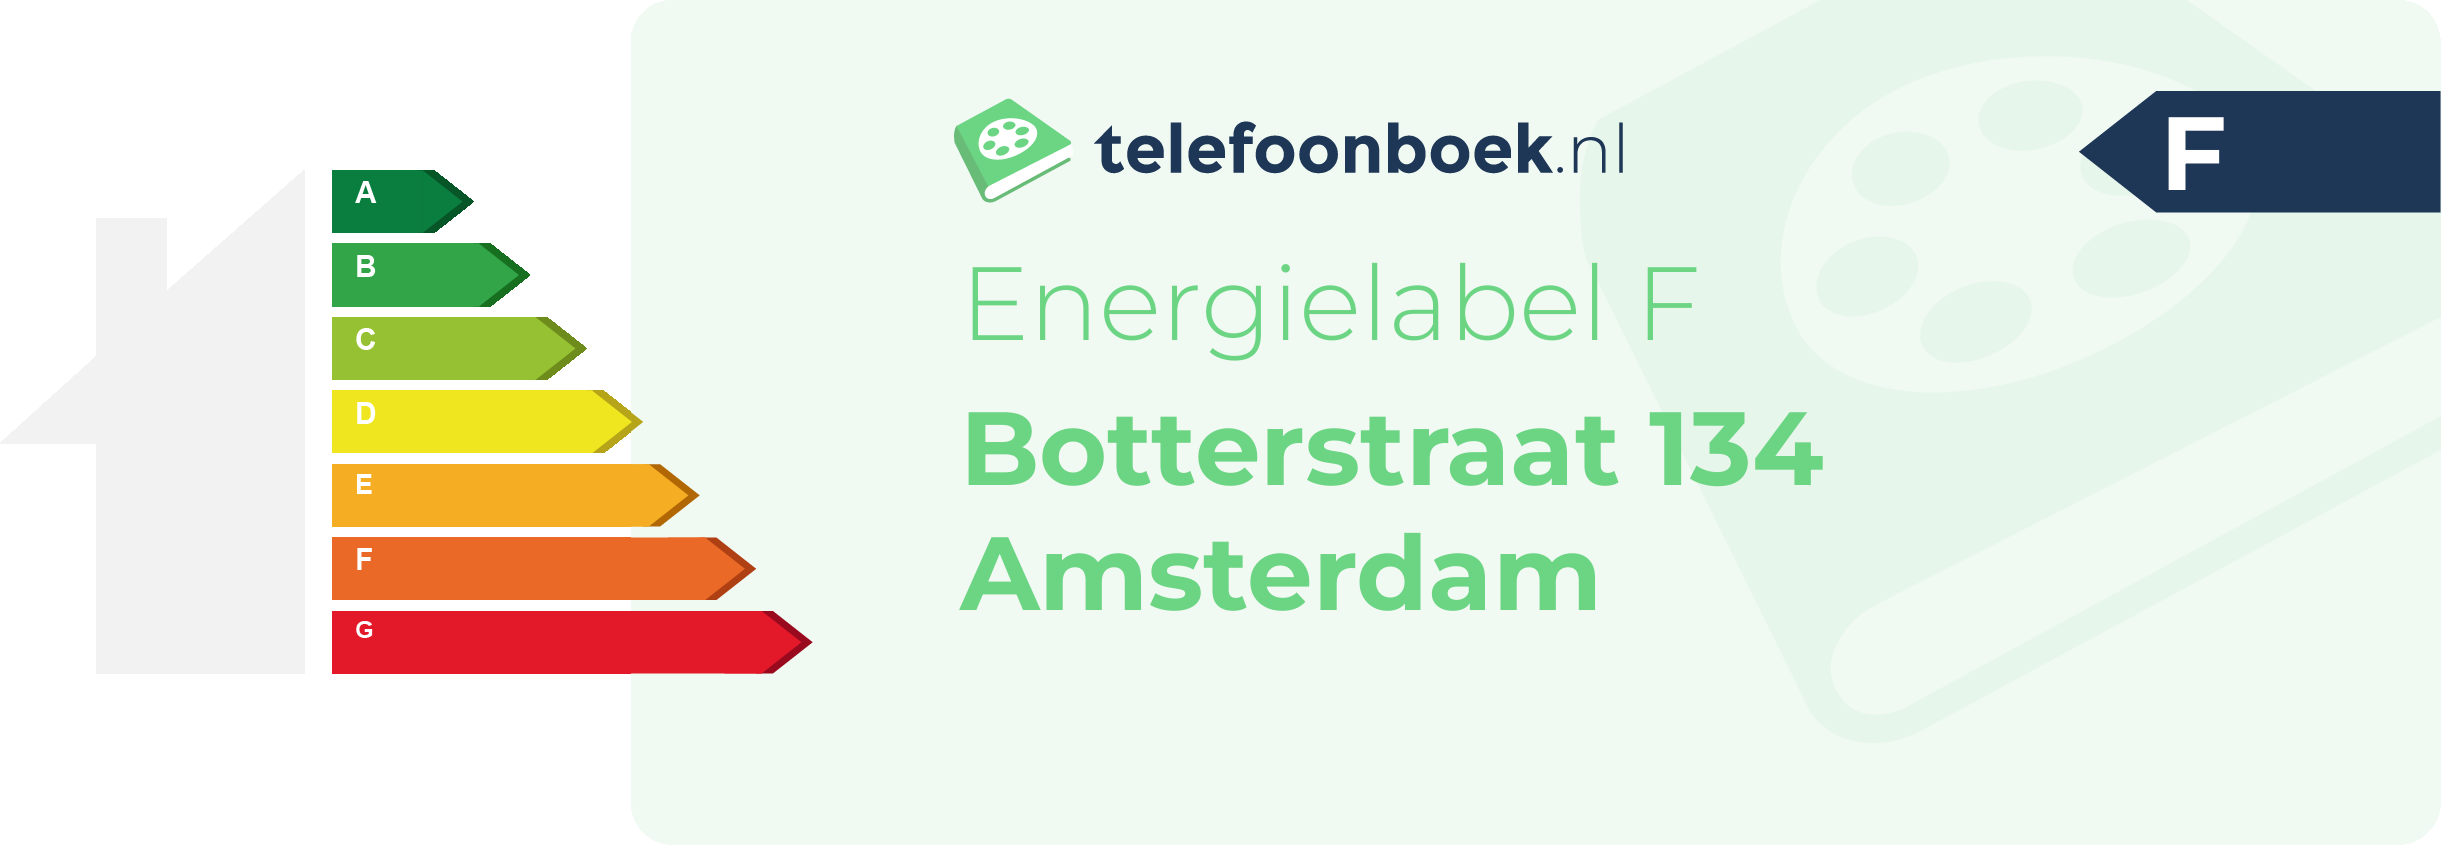 Energielabel Botterstraat 134 Amsterdam